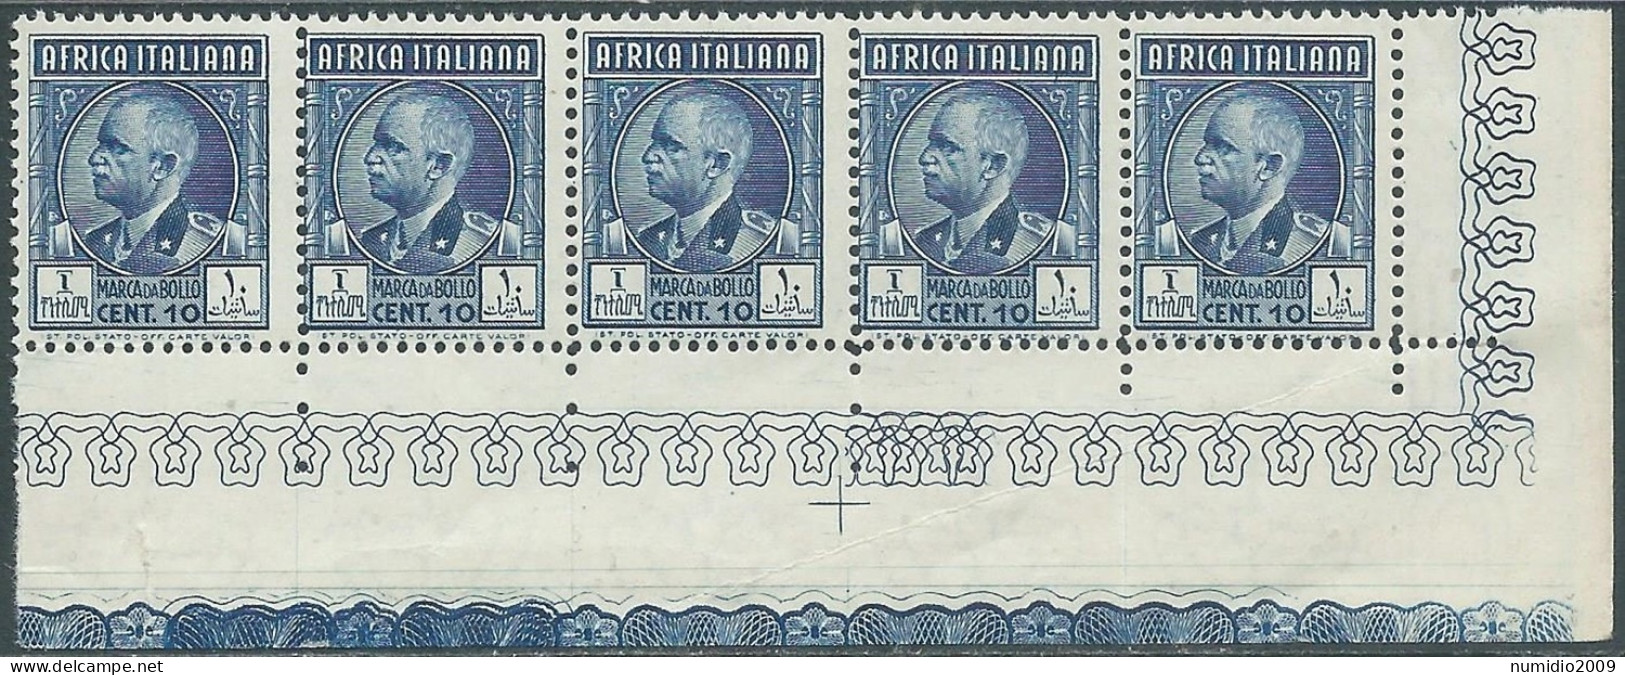 1939 AFRICA ITALIANA MARCA DA BOLLO 10 CENT BLOCCO DI 5 VALORI MNH ** - CZ39-3 - Afrique Orientale Italienne